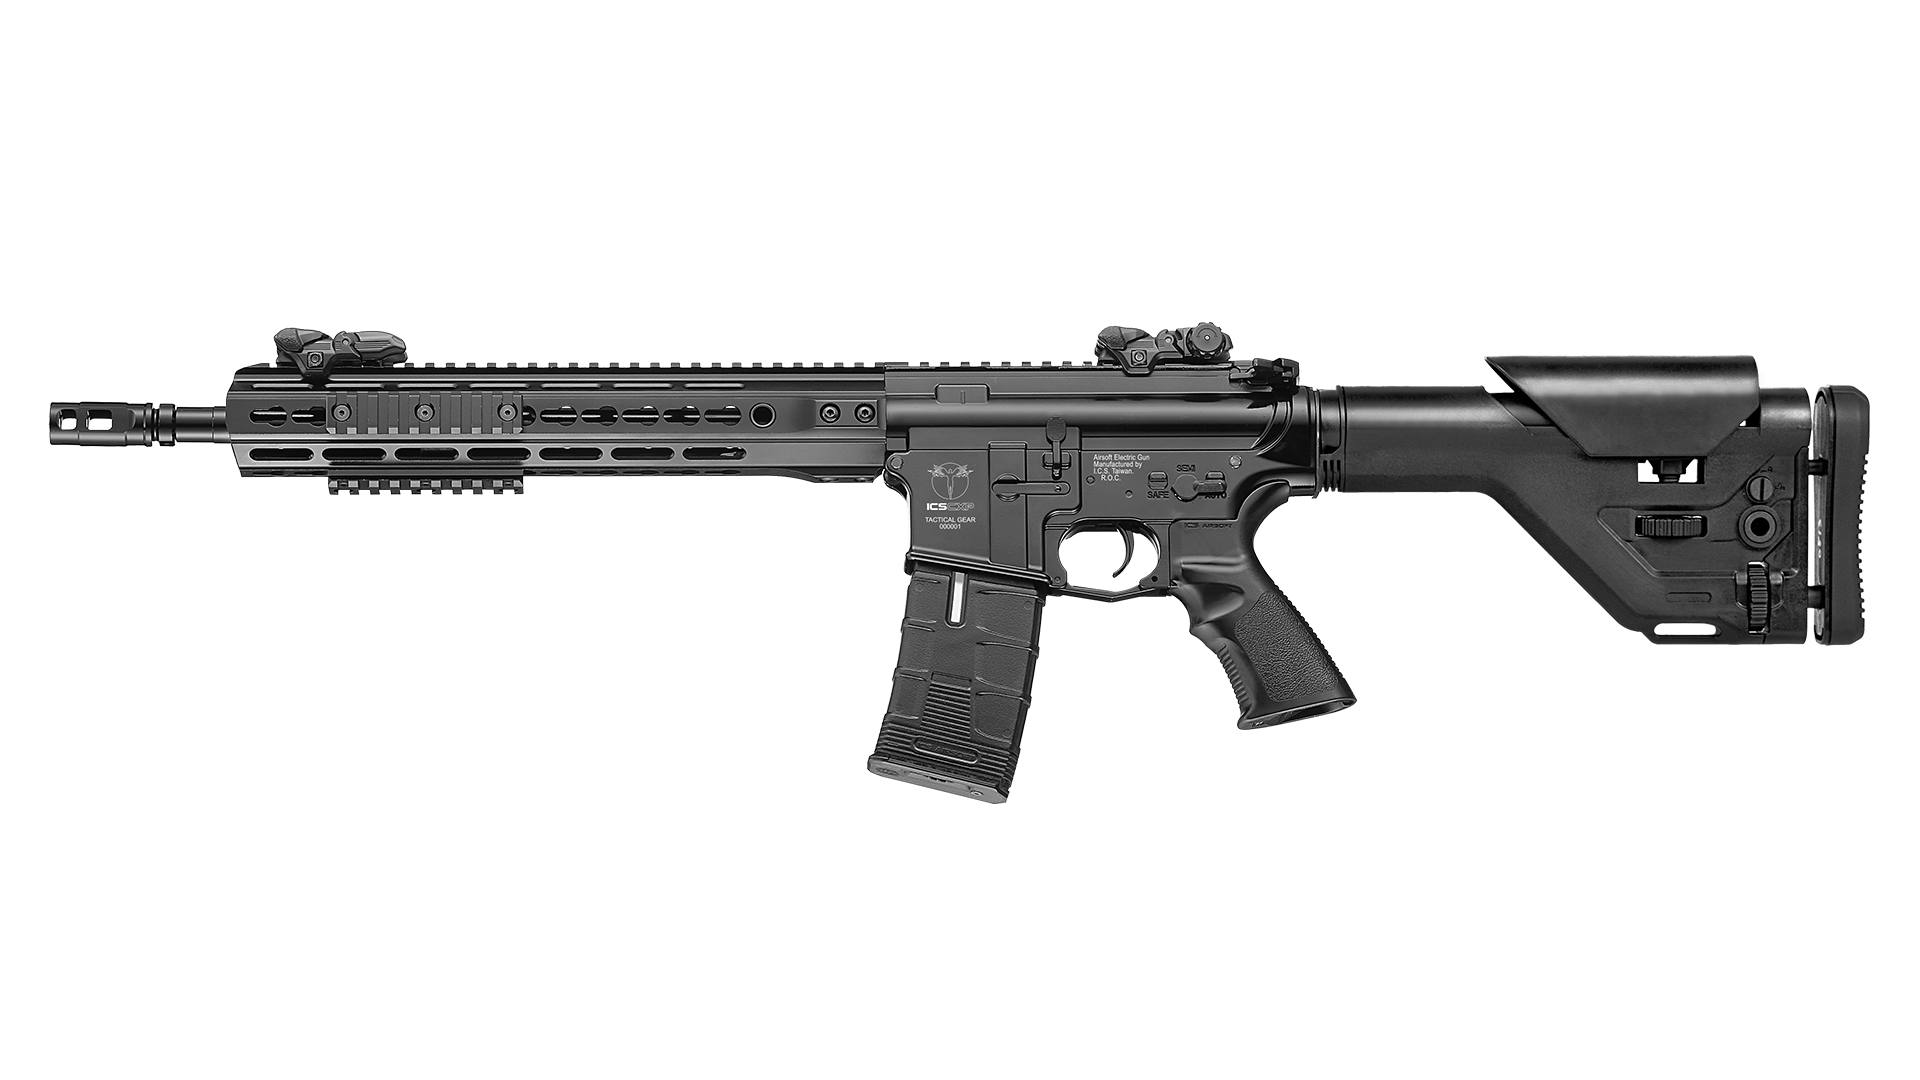 【Discontinued】CXP-UK1 Rifle UKSR Stock